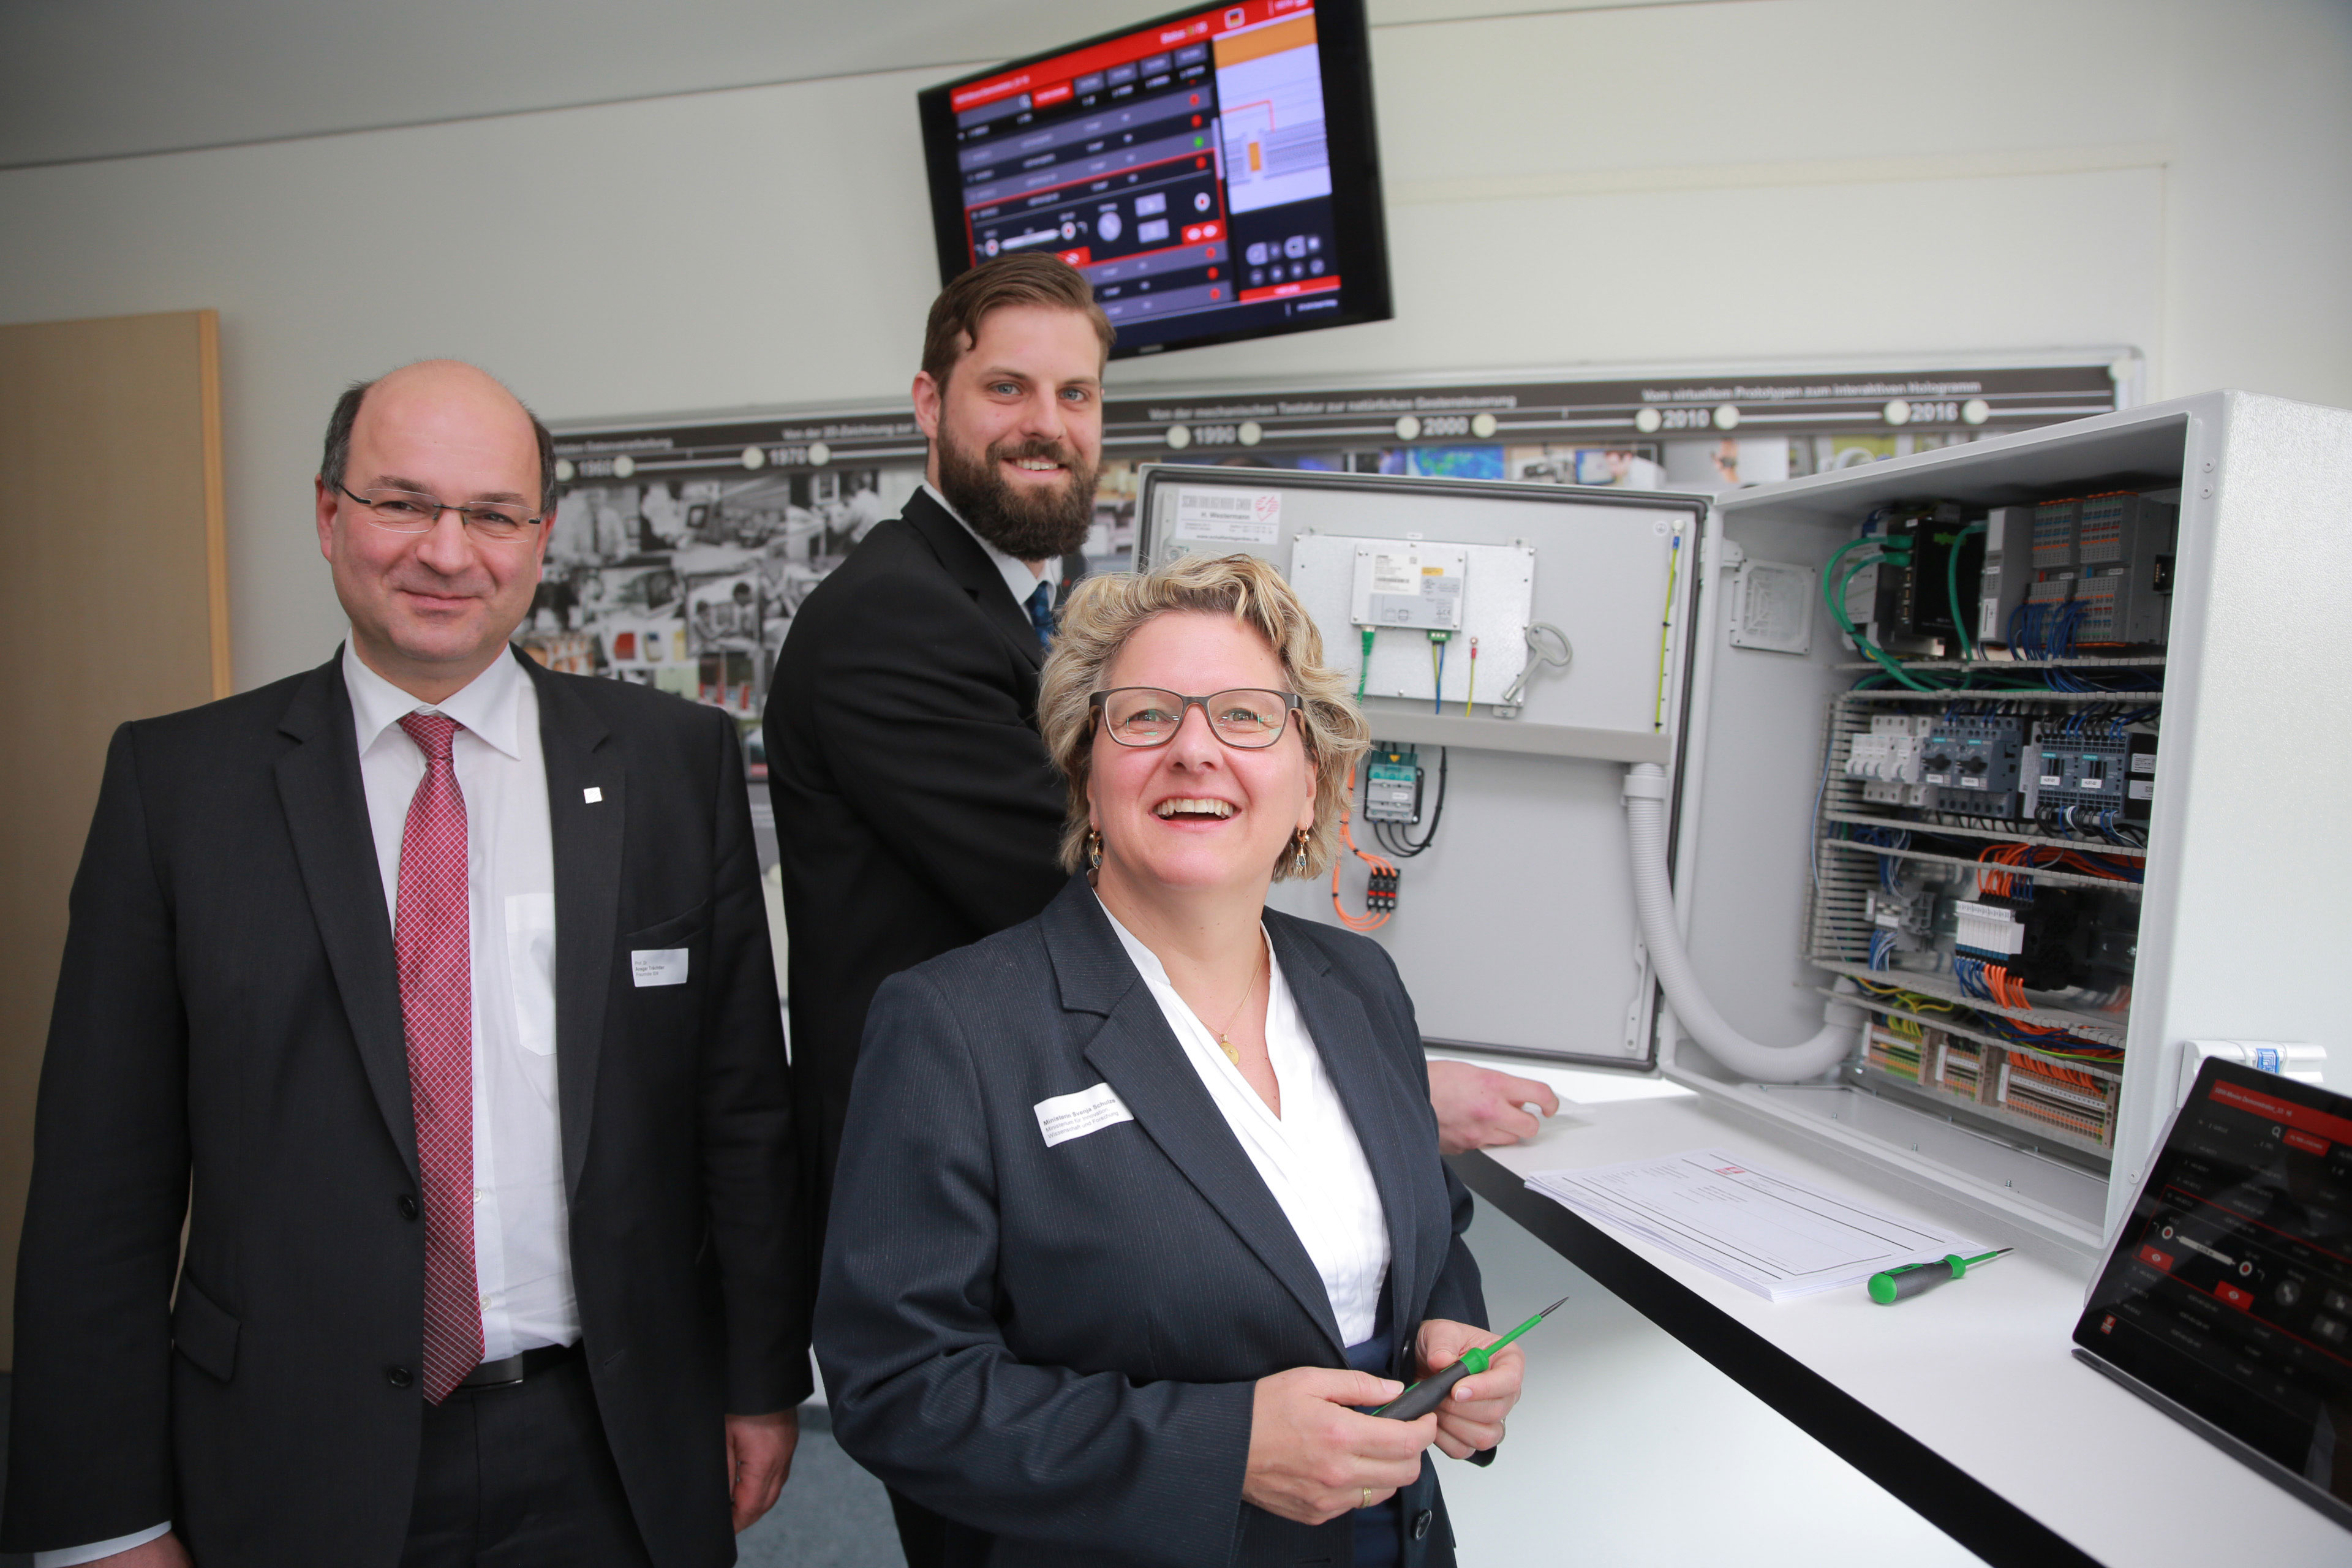 Zeigen NRW-Wissenschaftsministerin Svenja Schulze eine digitale Montageanleitung für einen Schaltschrank: Prof. Ansgar Trächtler (Leiter Fraunhofer IEM, links) und Matthias Greinert (Wissenschaftler am Fraunhofer IEM).